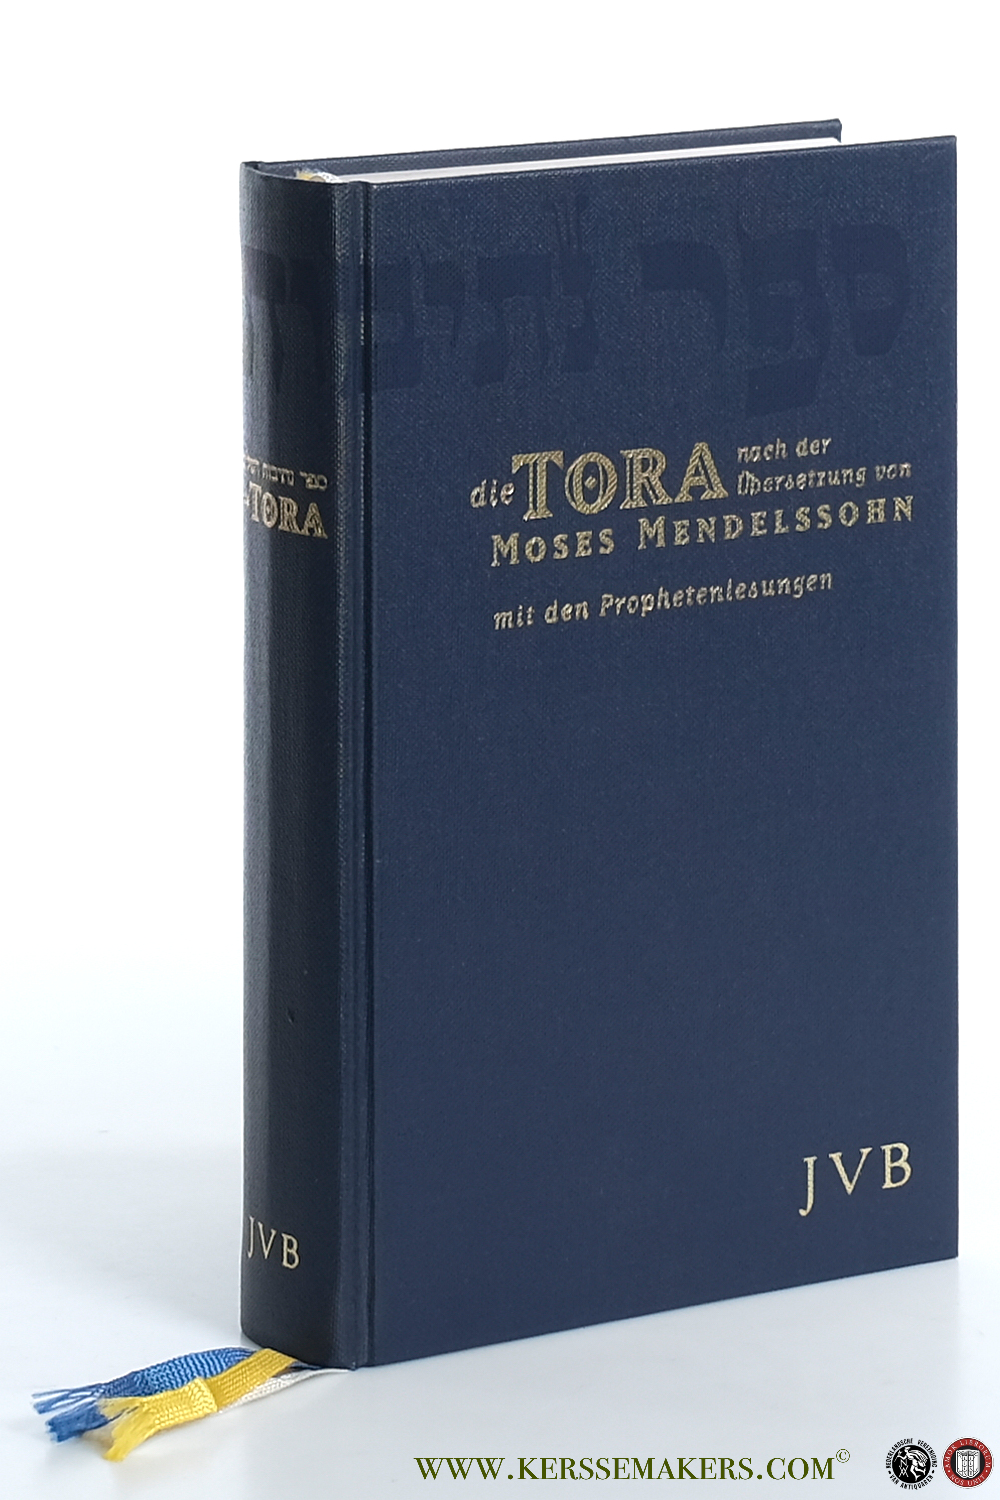 Die Tora nach der Übersetzung von Moses Mendelssohn mit den Prophetenlesungen im Anhang. 2. Auflage - Ben-Chorin, Tovia / Annette Böckler.